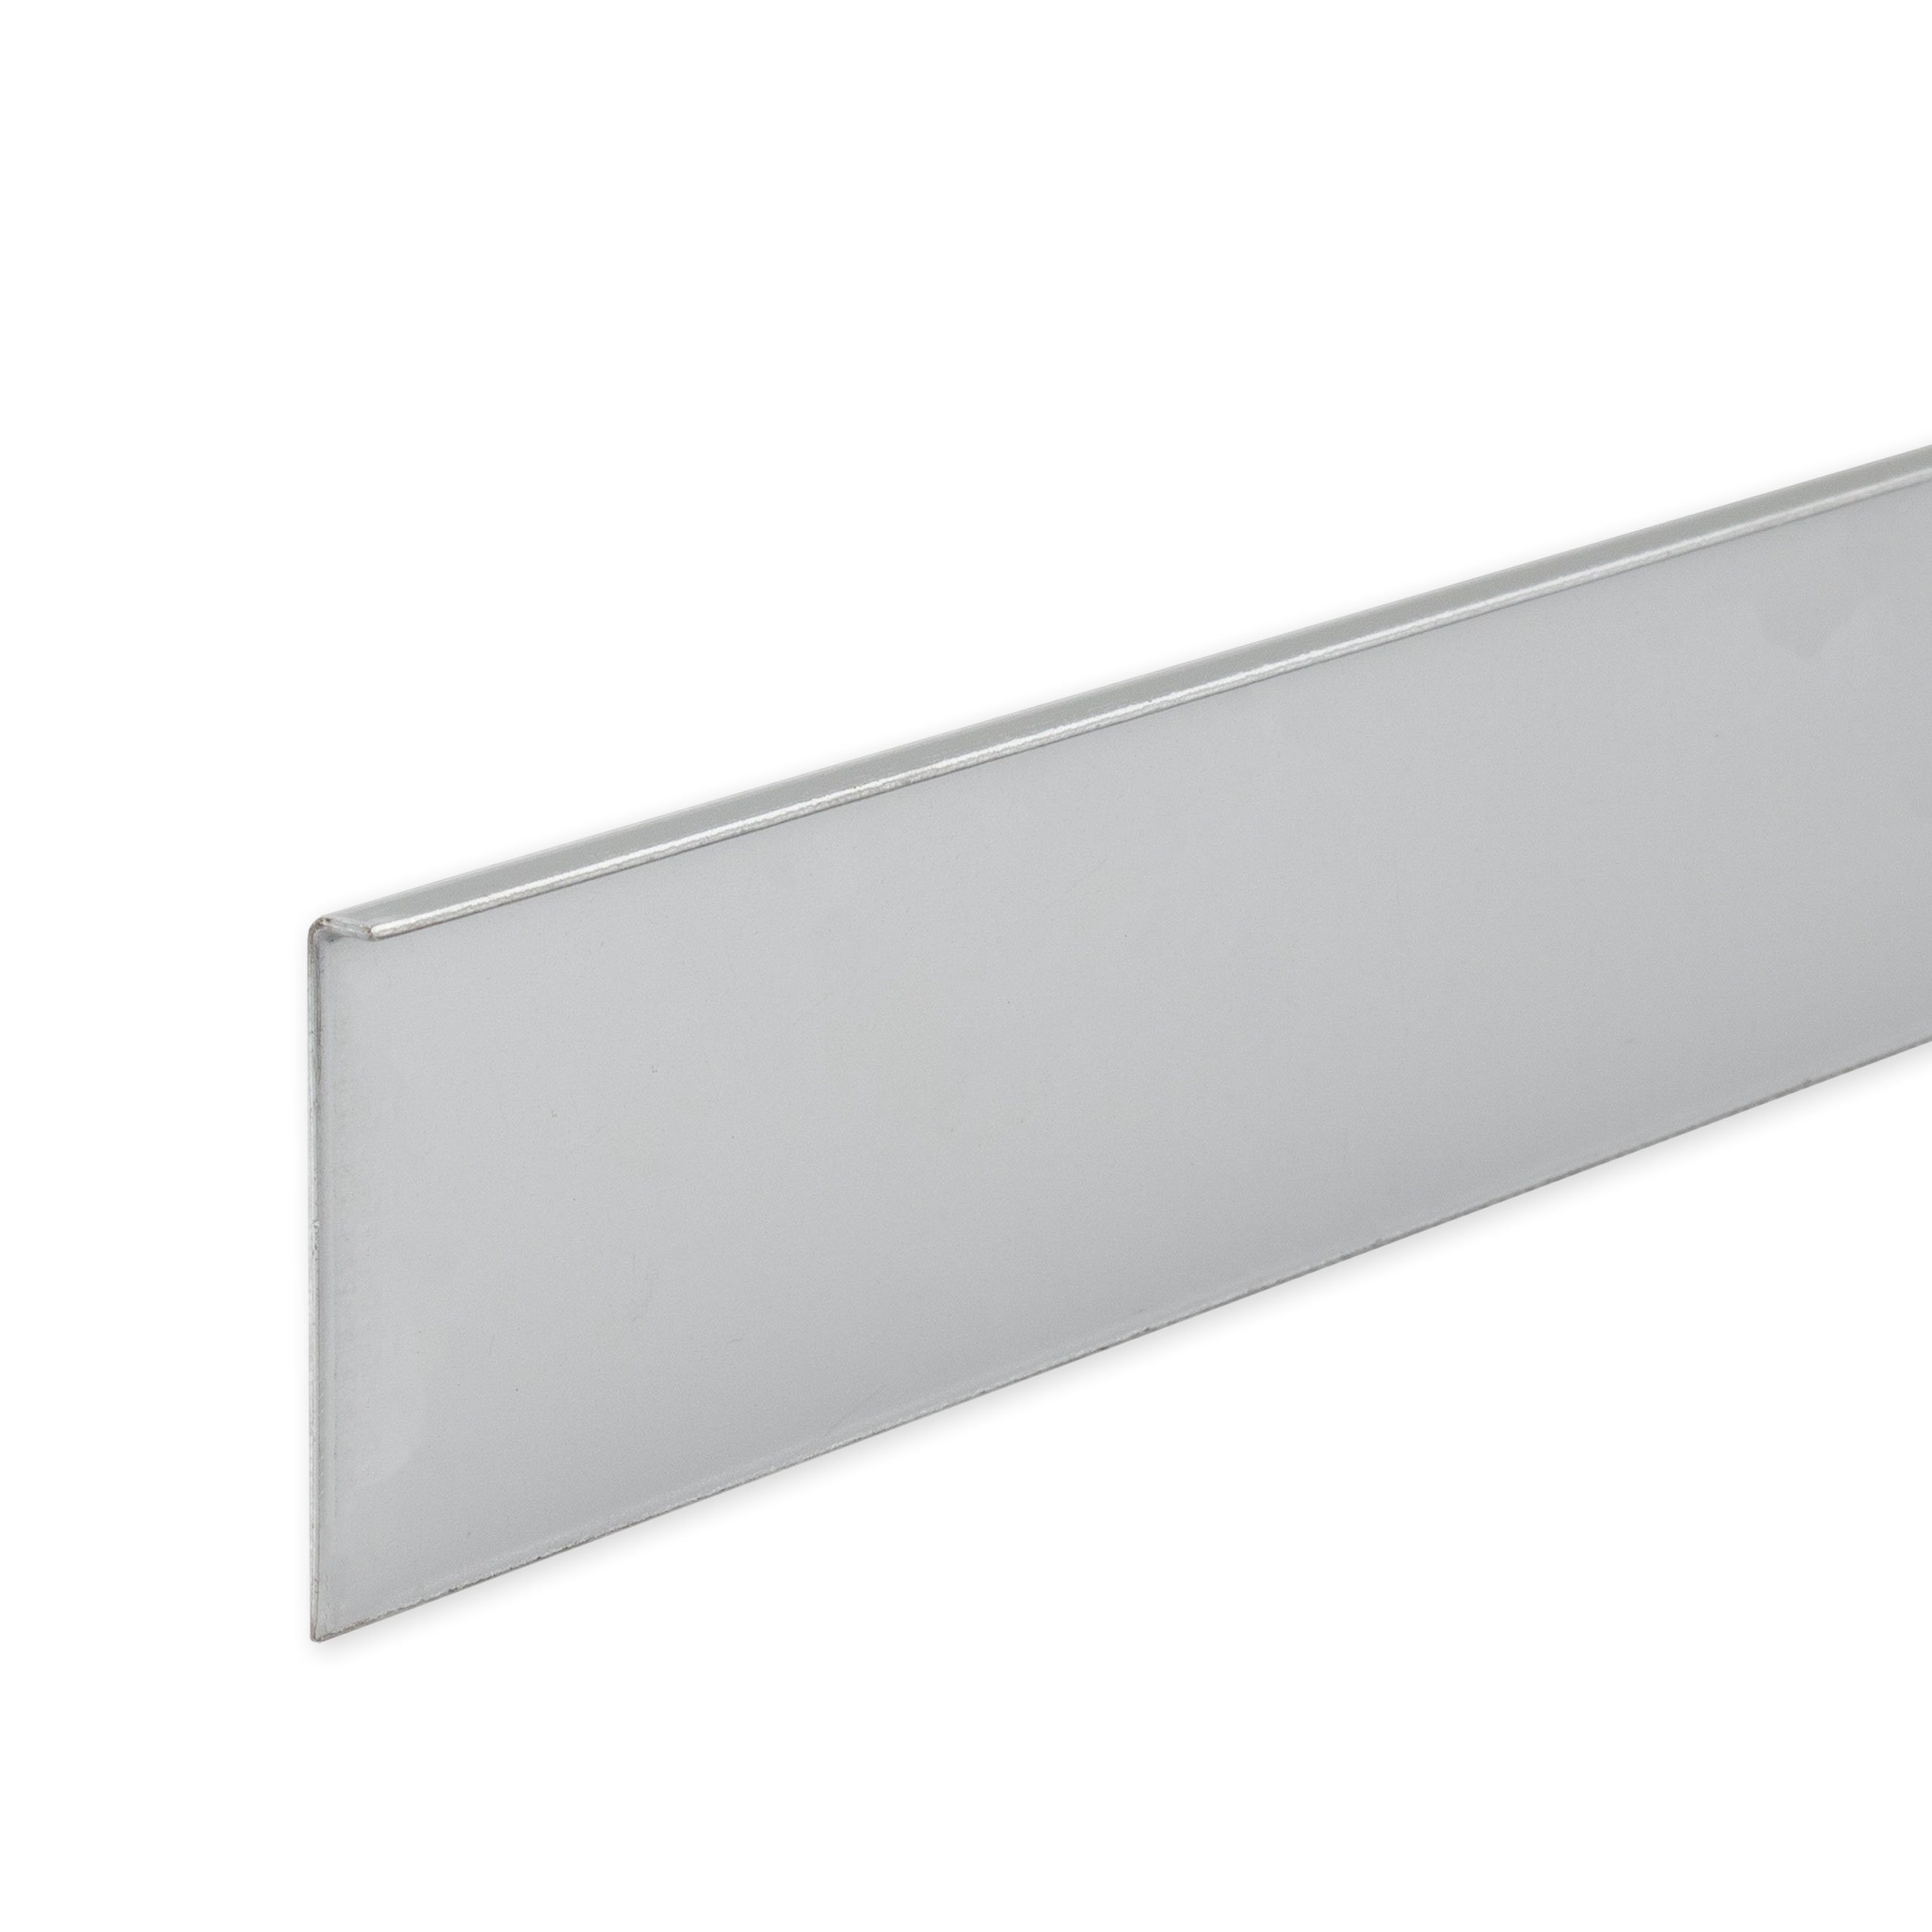 PROVISTON Sockelleiste Aluminium, 40 x 4 x 2500 mm, Silber, Metall Sockelleiste